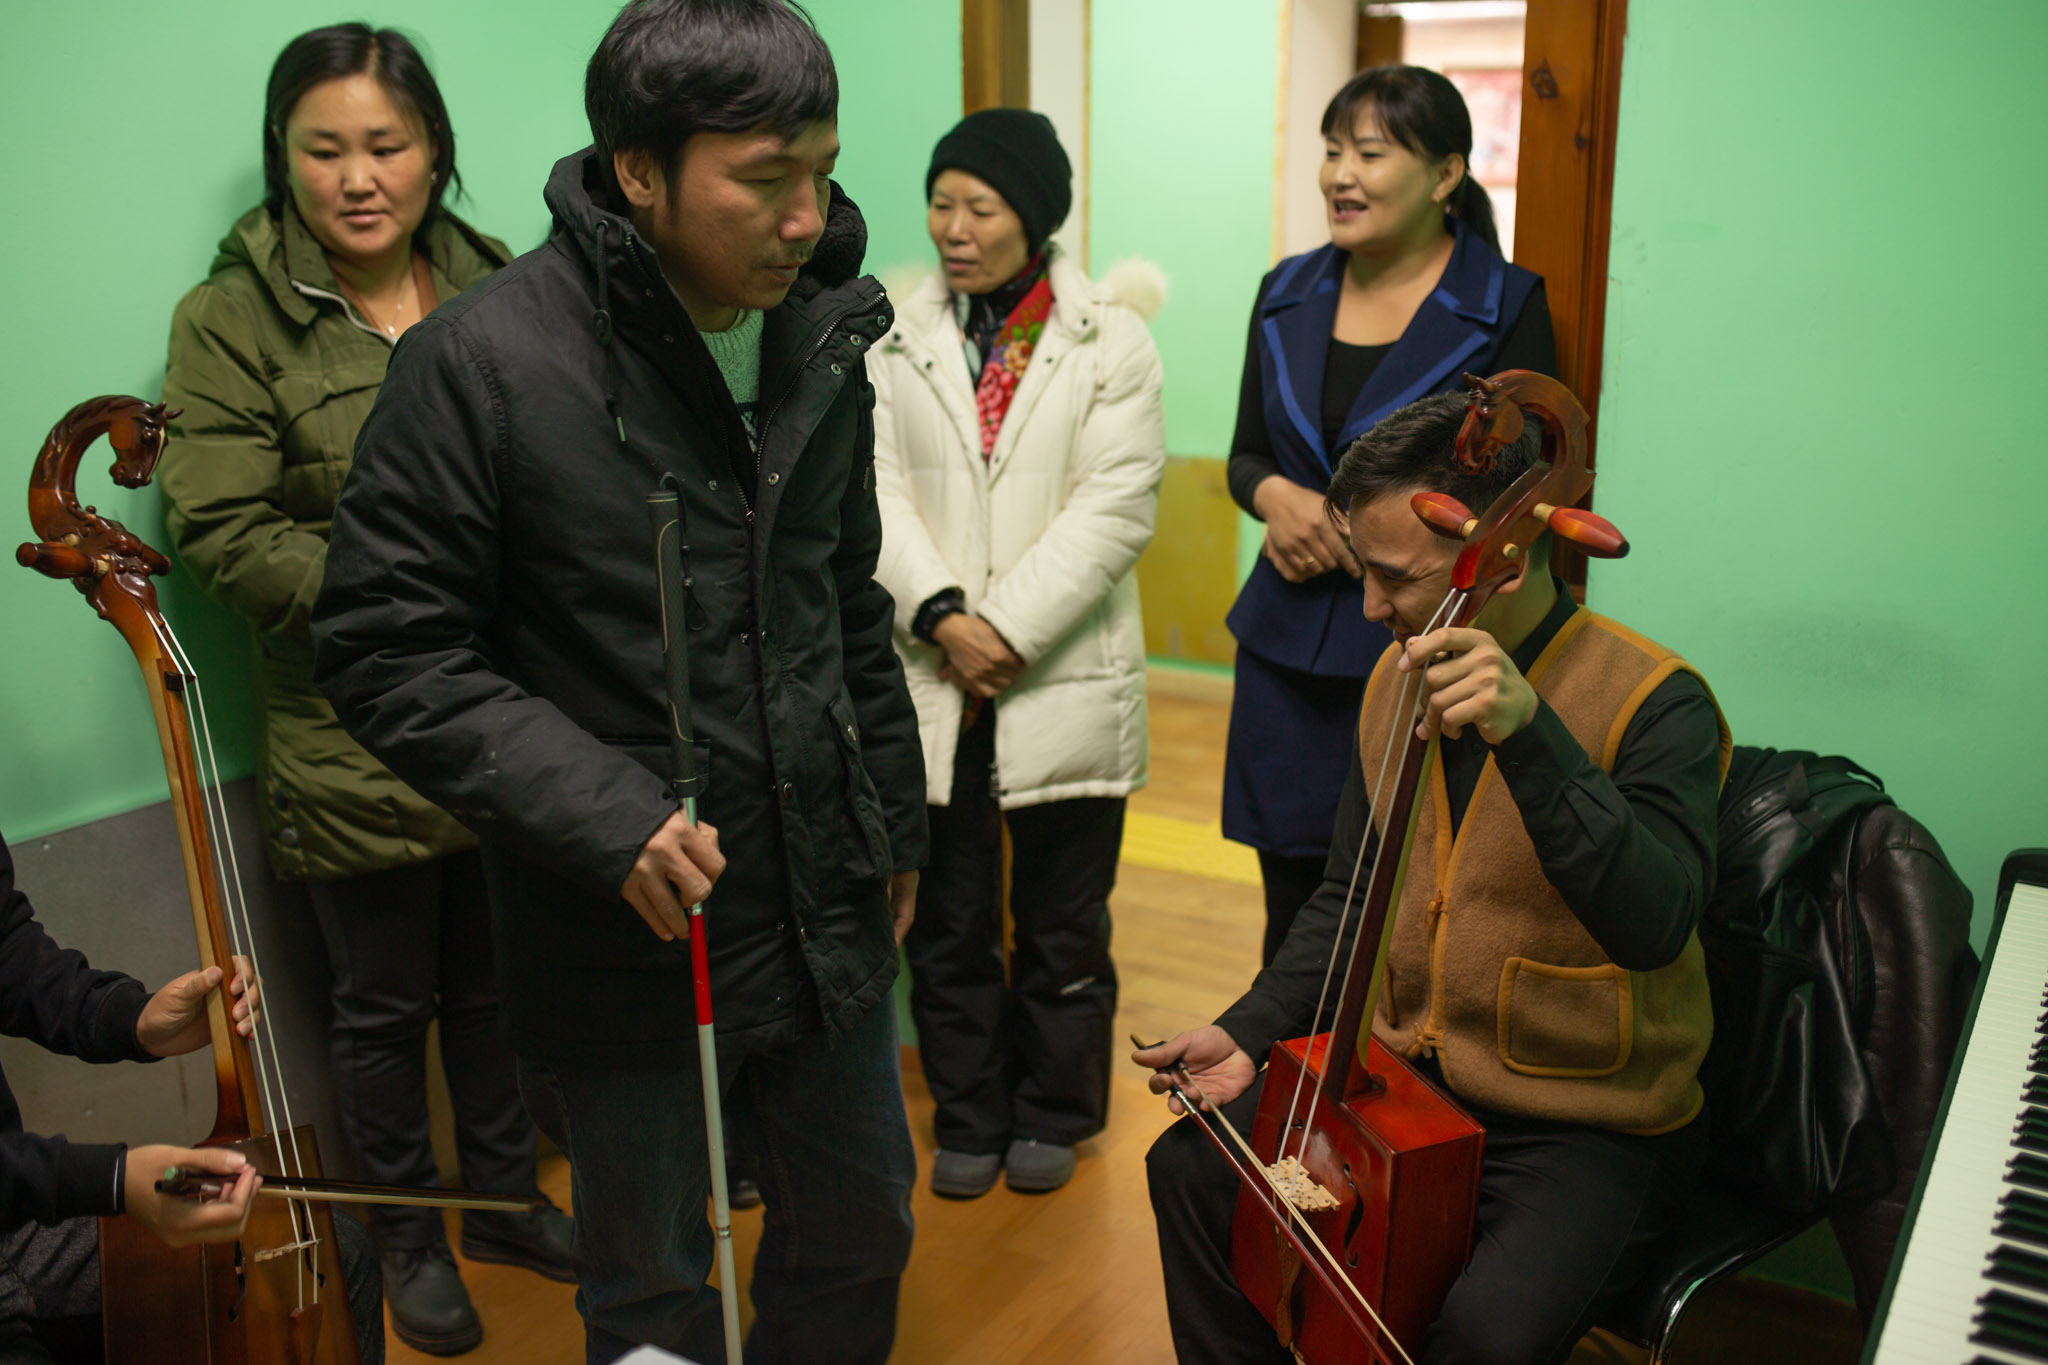 Lớp học nhạc với Morin Khuur, nhạc cụ truyền thống của người Mông Cổ. Cần đàn được trang trí với hình đầu ngựa, dây và cây vĩ được làm từ đuôi ngựa.